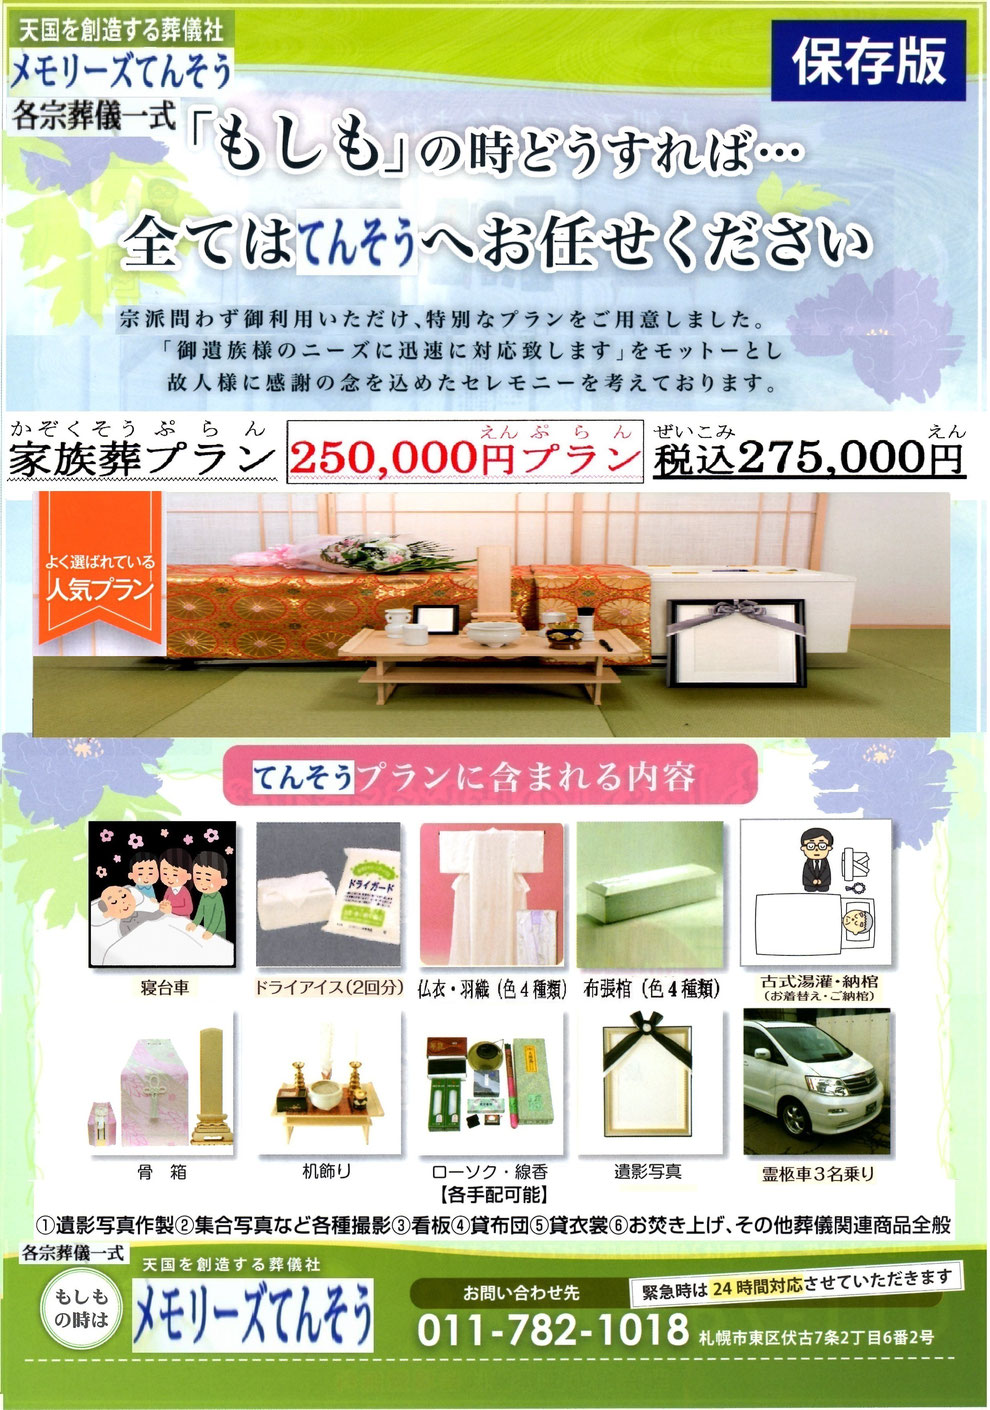 札幌家族葬メモリーズてんそう 葬儀・家族葬275,000円プラン